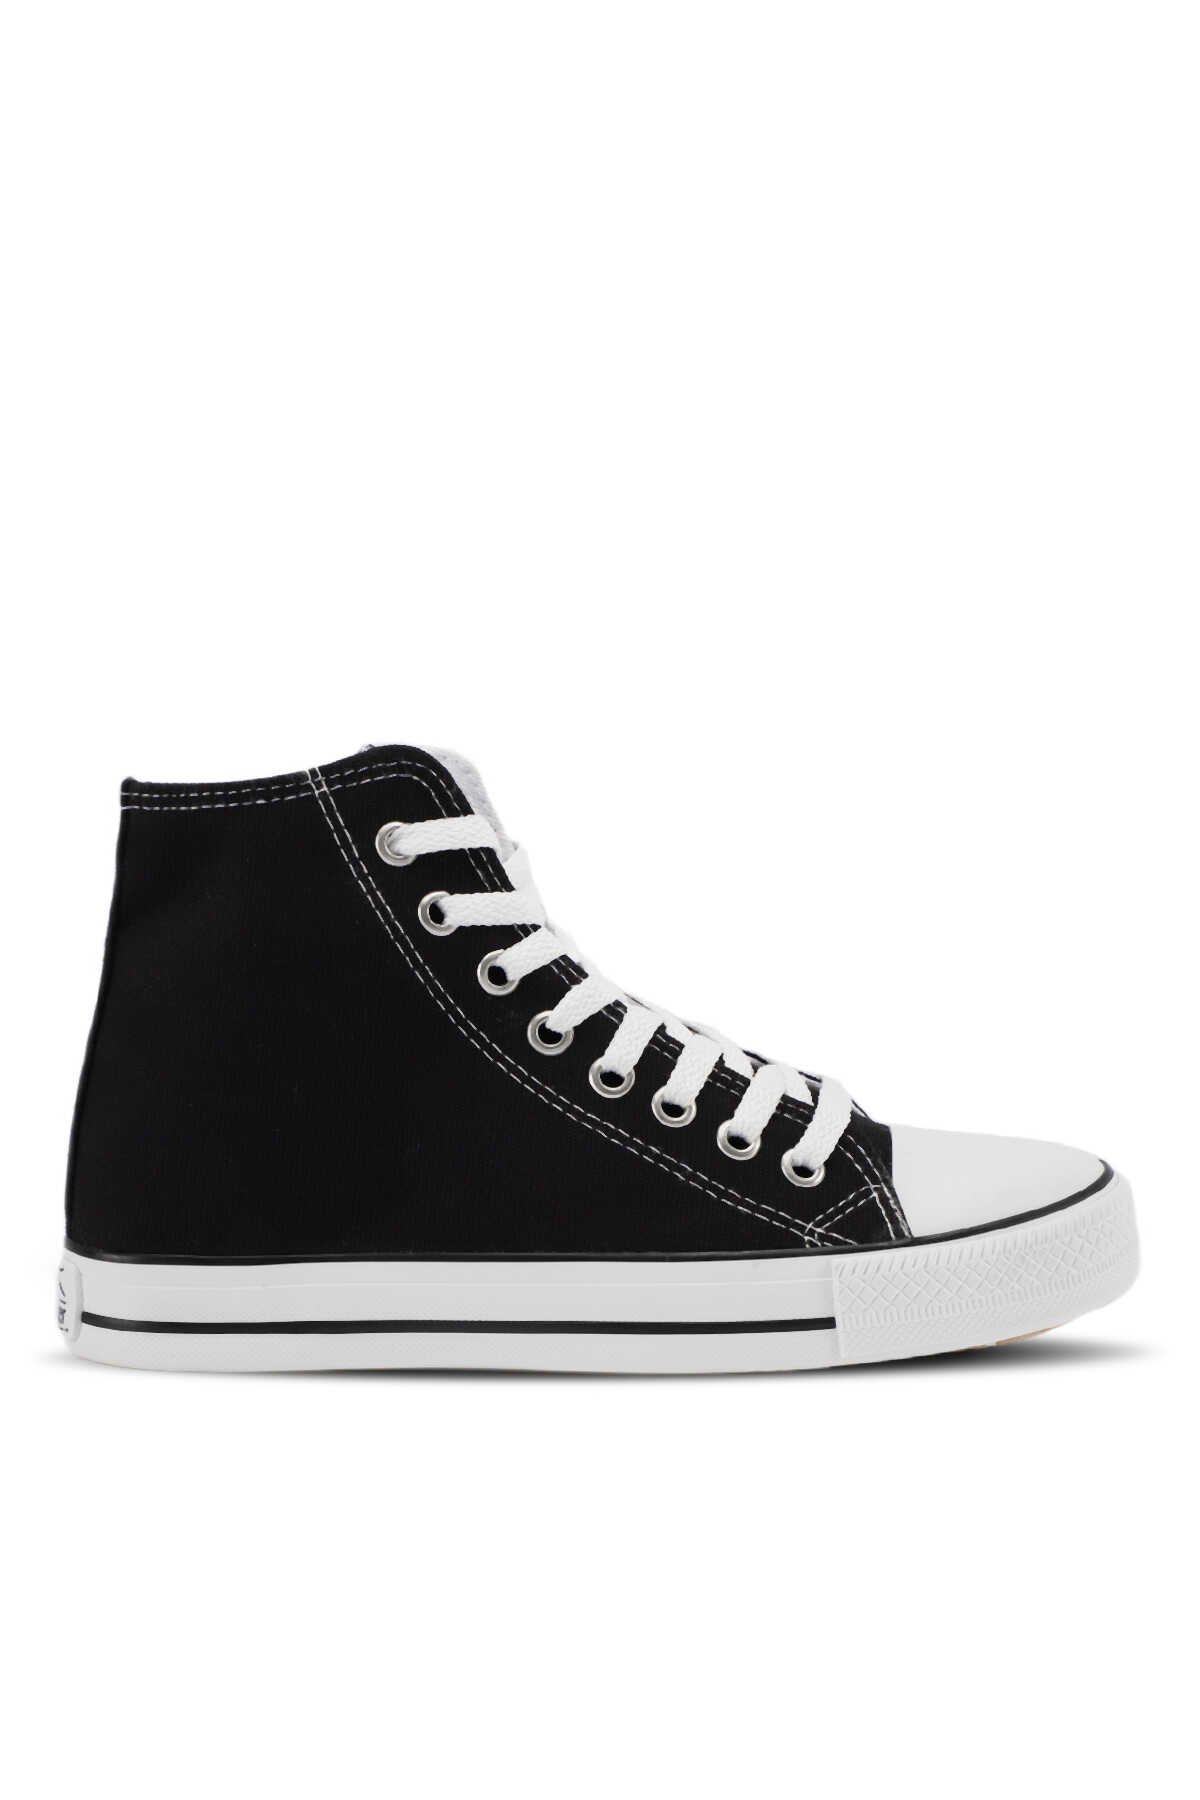 Slazenger - Slazenger SCHOOL Sneaker Erkek Ayakkabı Siyah